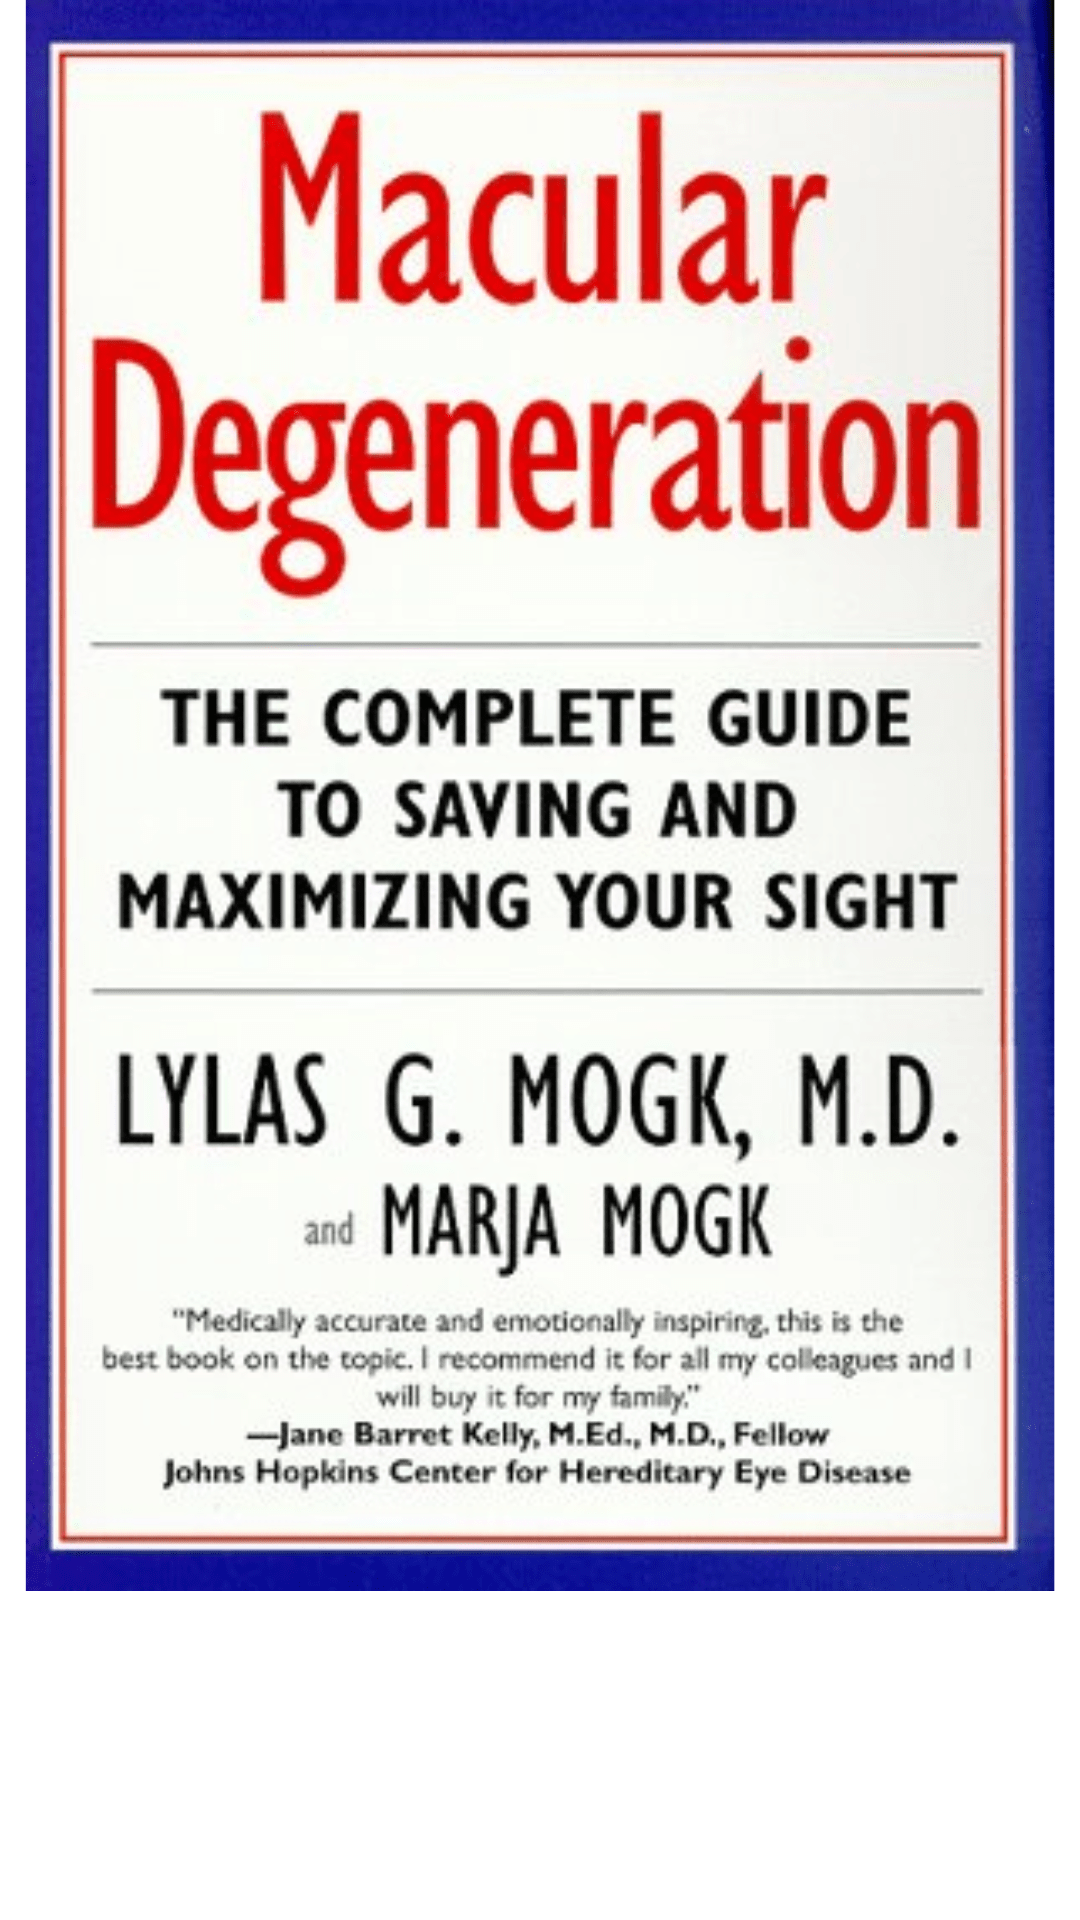 Macular Degeneration by Lylas G. Mogk